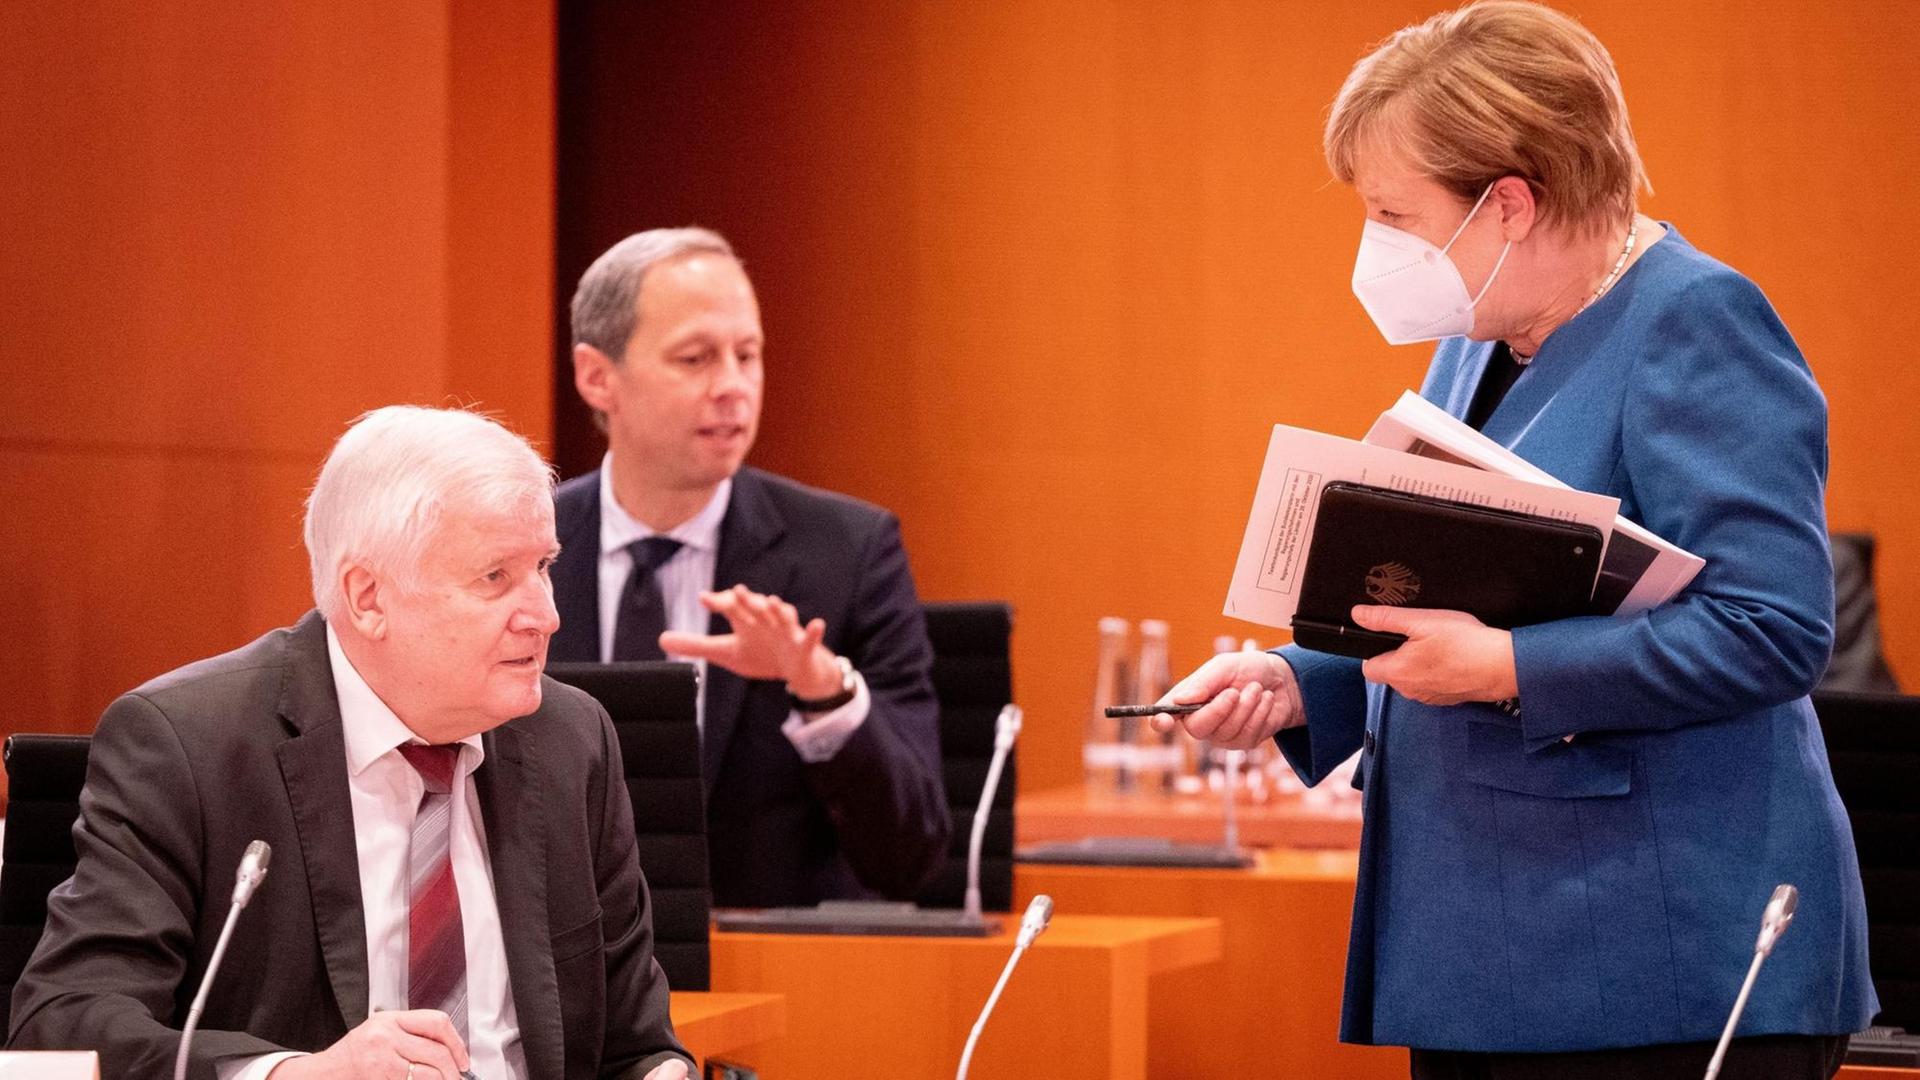 Bundeskanzlerin Angela Merkel (CDU) und Horst Seehofer (CSU - l), Bundesminister des Innern, für Bau und Heimat, unterhalten sich vor Hendrik Hoppenstedt (M), Staatsminister bei der Bundeskanzlerin, zu Beginn der Sitzung des Bundeskabinetts im Bundeskanzleramt.